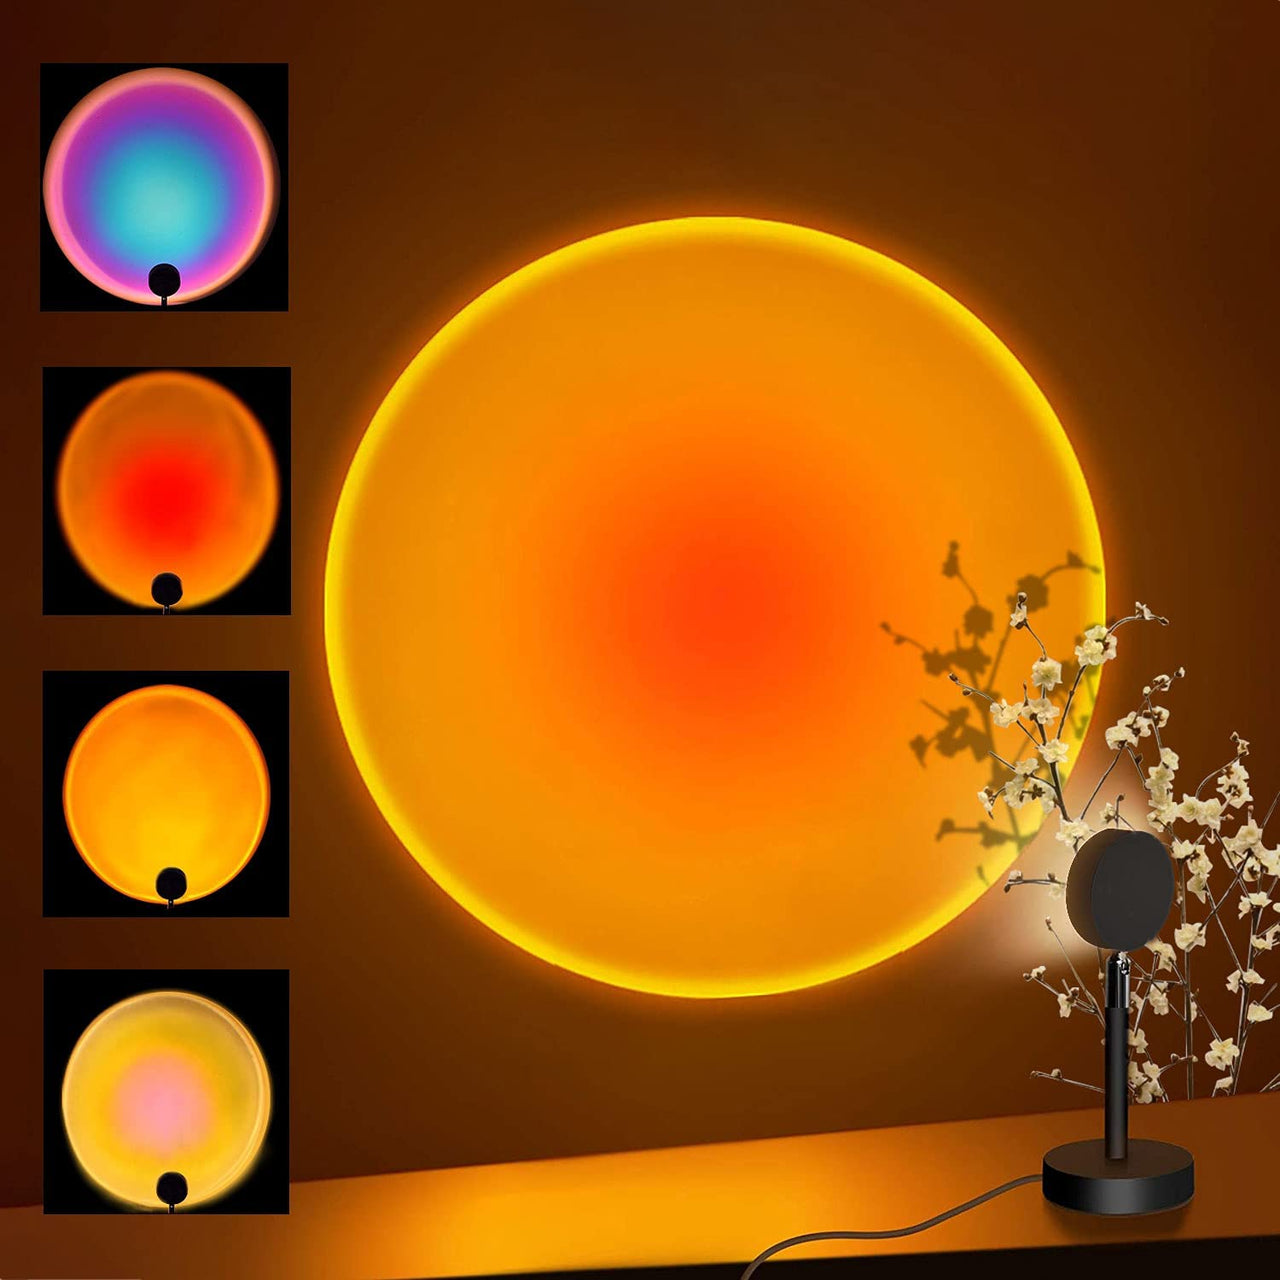 Sunset Projector Table Lamp - Fantasiaa 